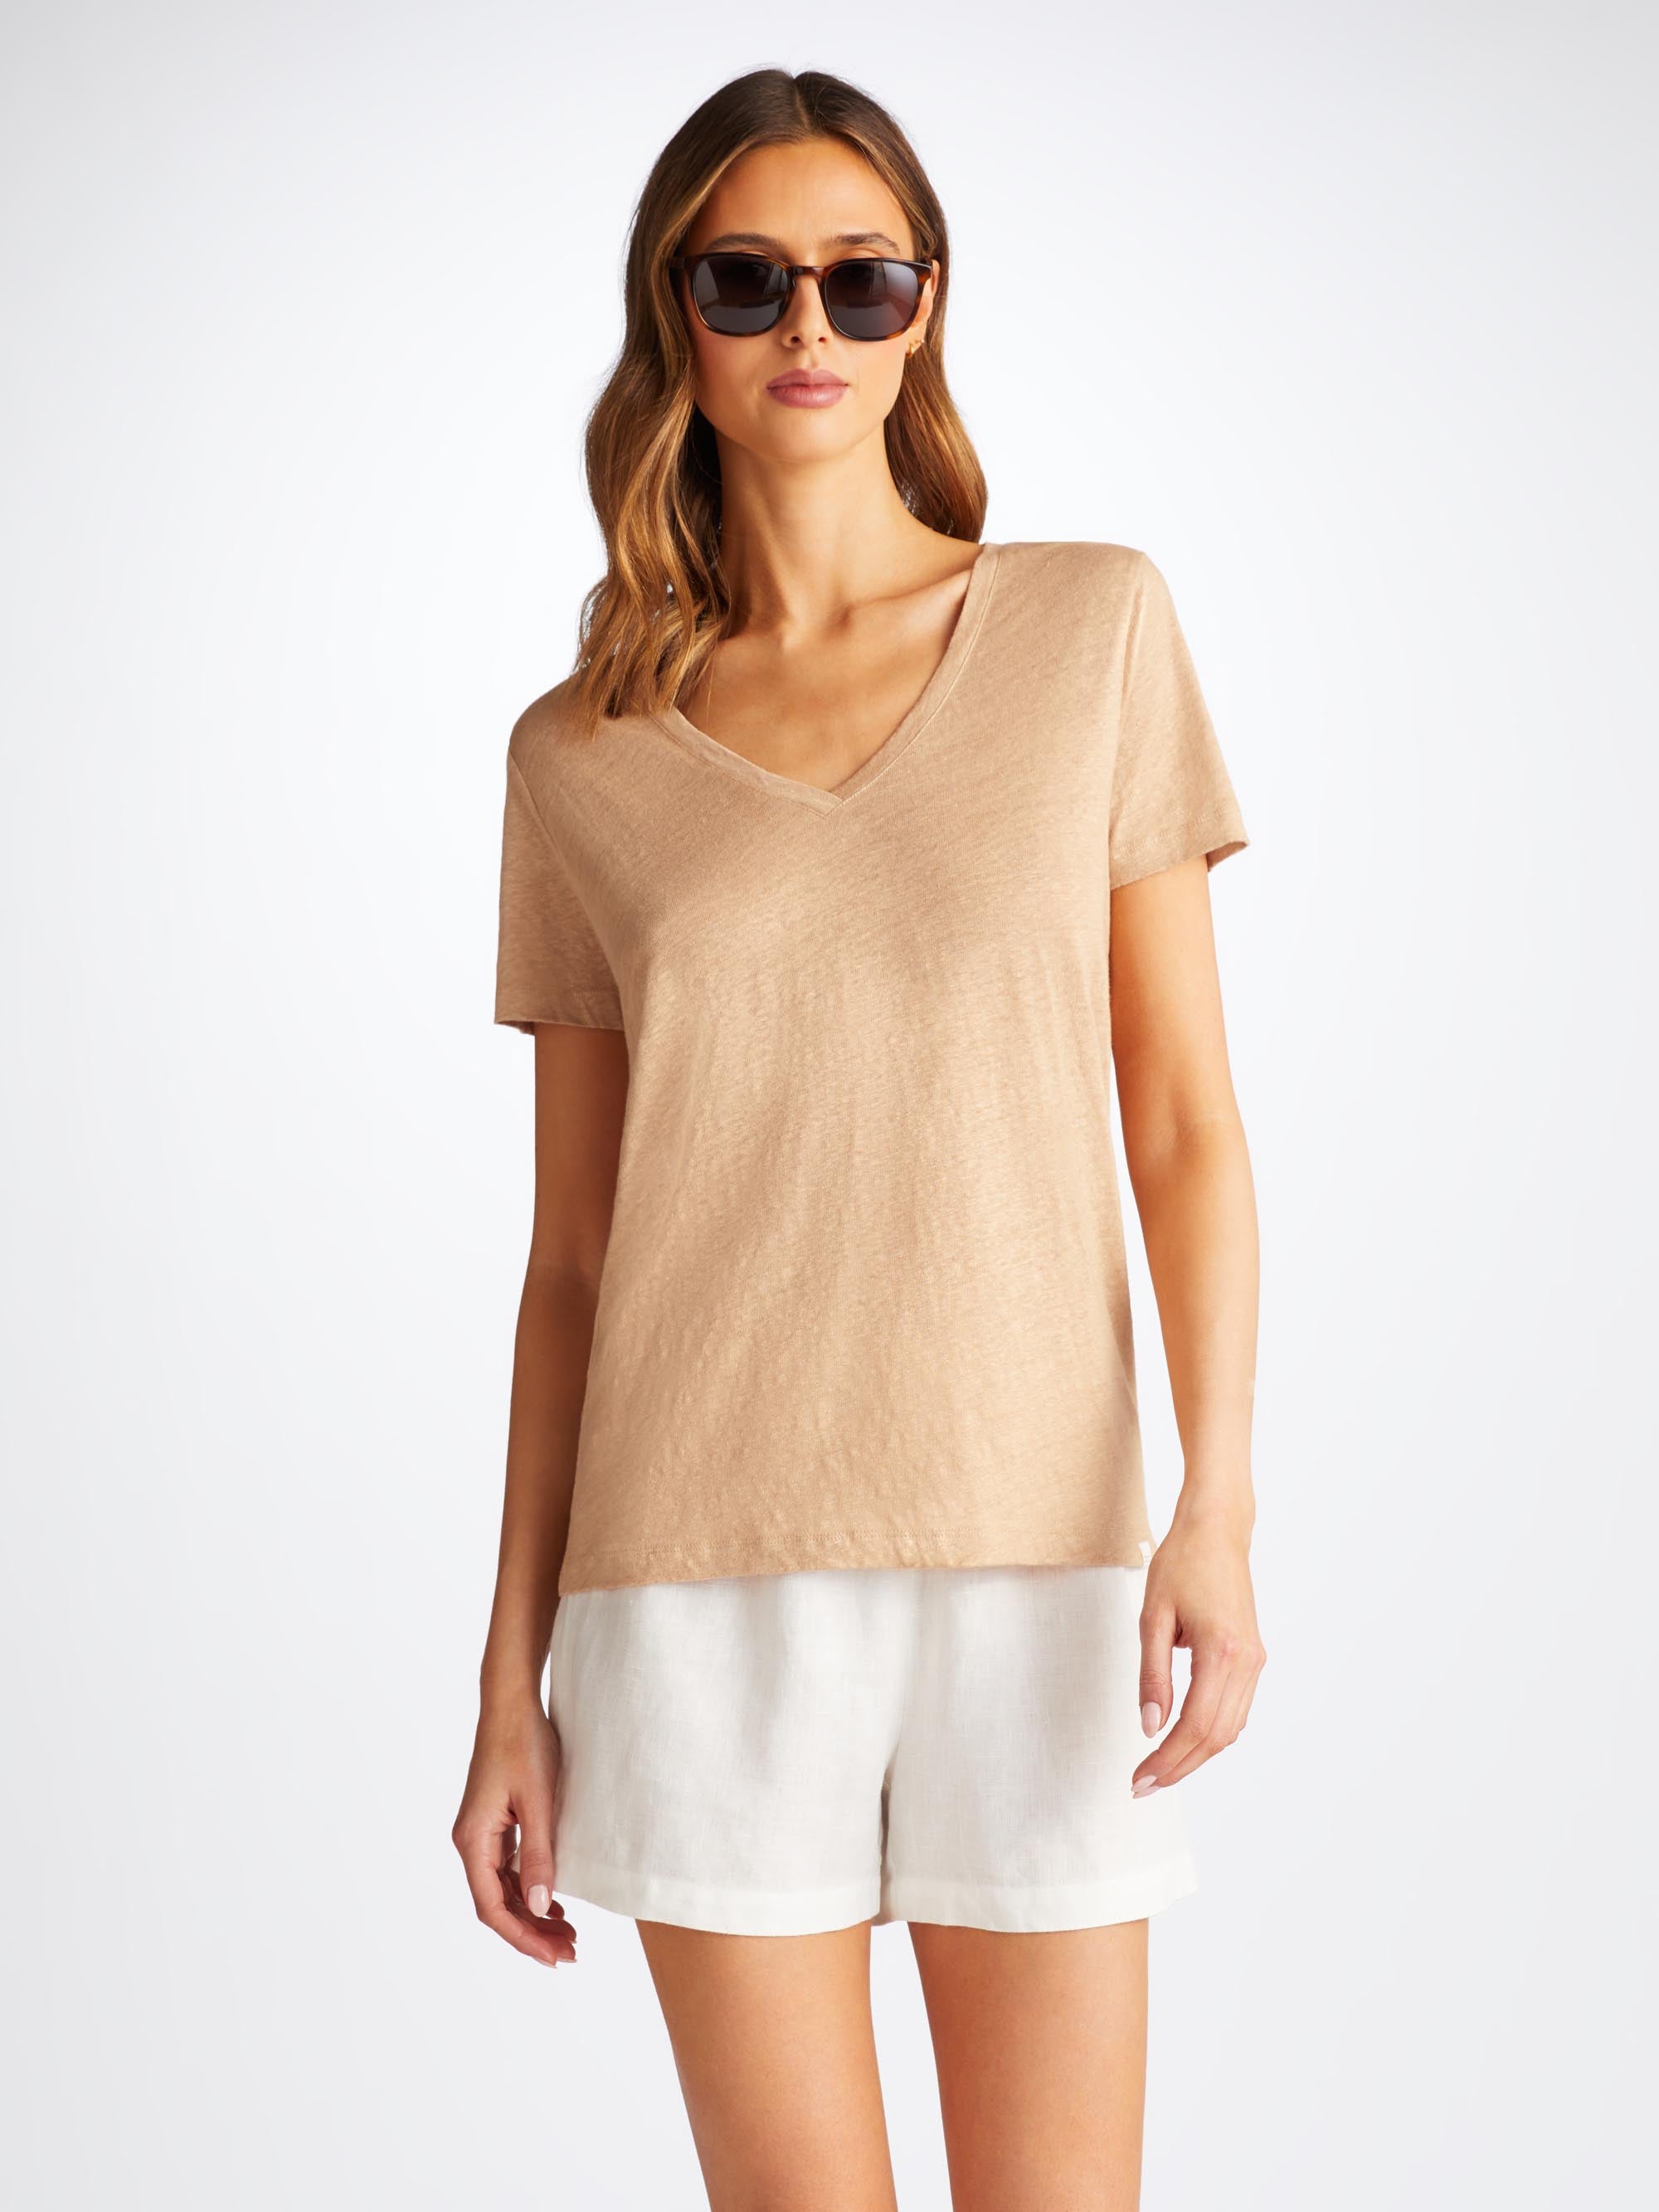 Women's V-Neck T-Shirt Jordan Linen Sand